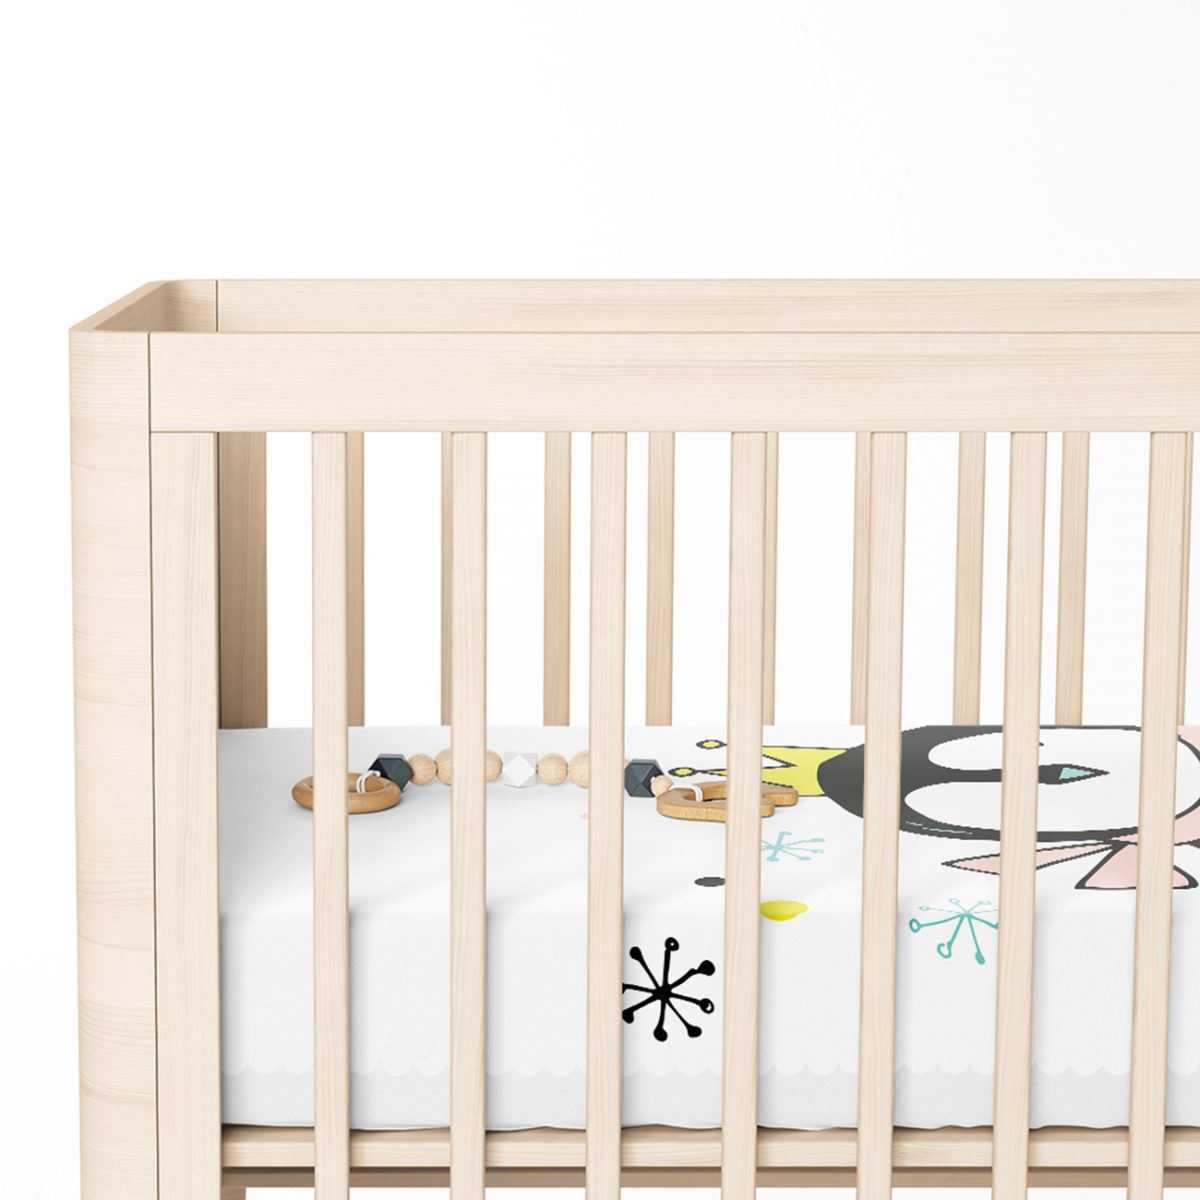 Uçan Sevimli Penguen Tasarımlı Bebek Odası Yatak Örtüsü Realhomes